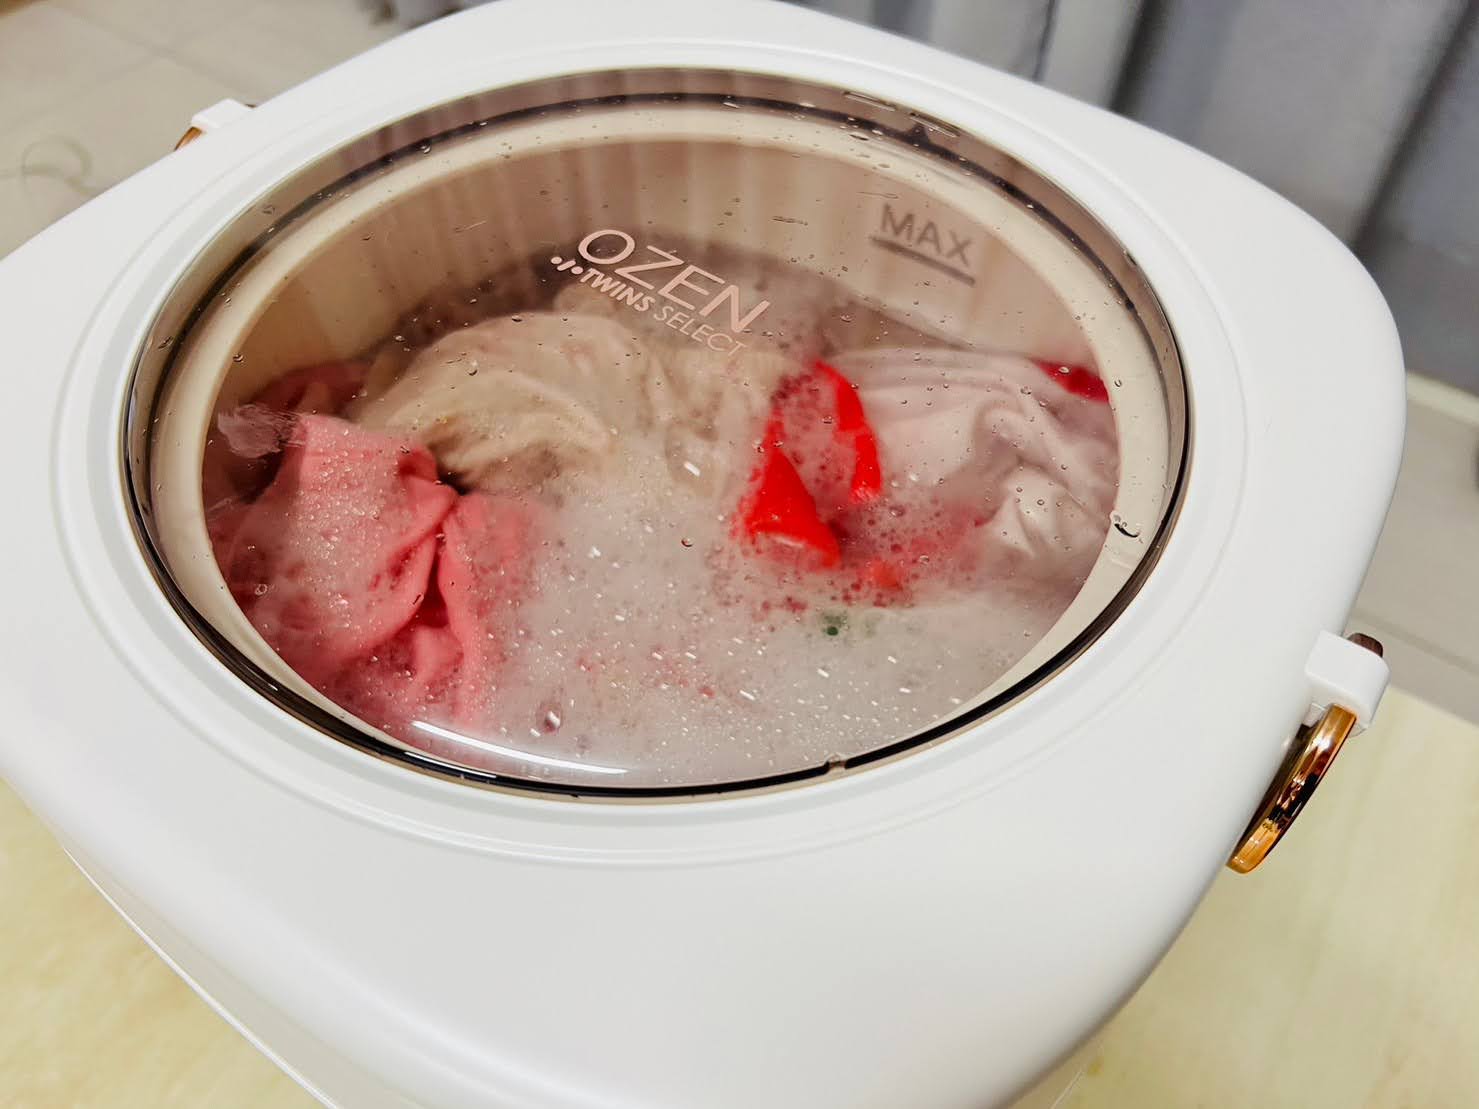 團購優惠推薦 OZEN智能折疊清洗機 嬰兒衣服洗衣機評價